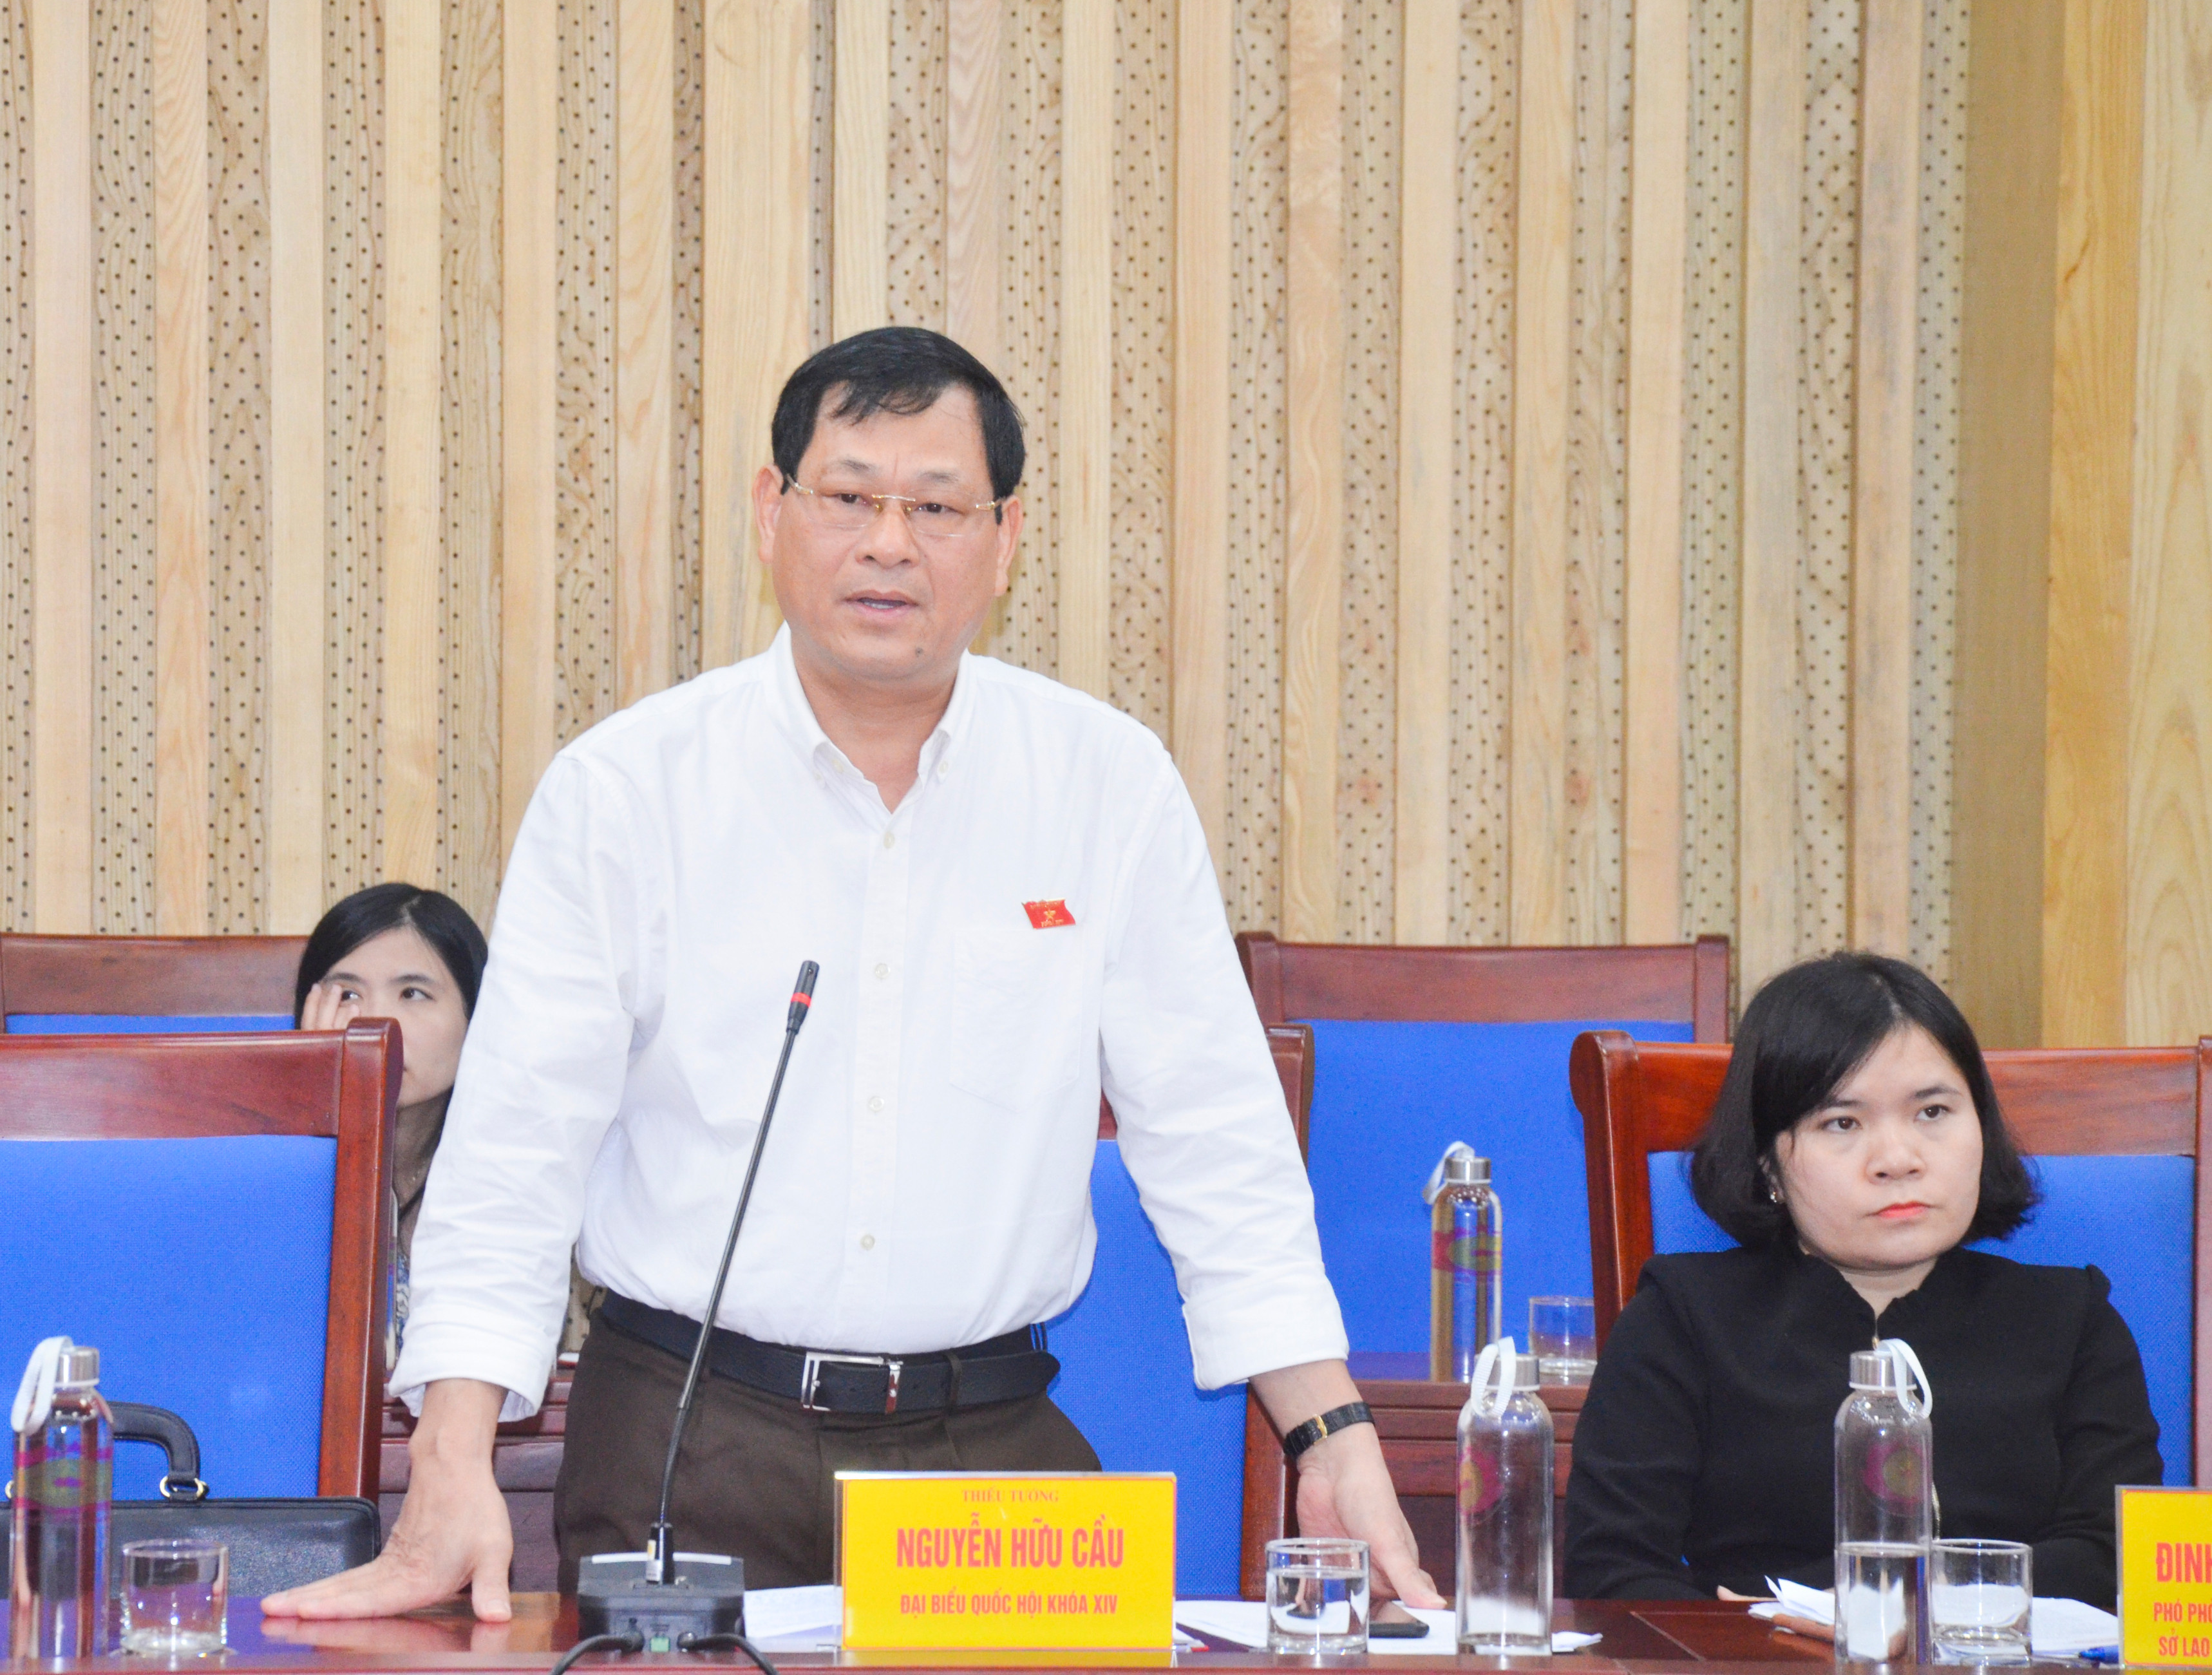 Đại biểu Nguyễn Hữu Cầu đề nghị UBND tỉnh làm rõ các vấn đề thủy điện